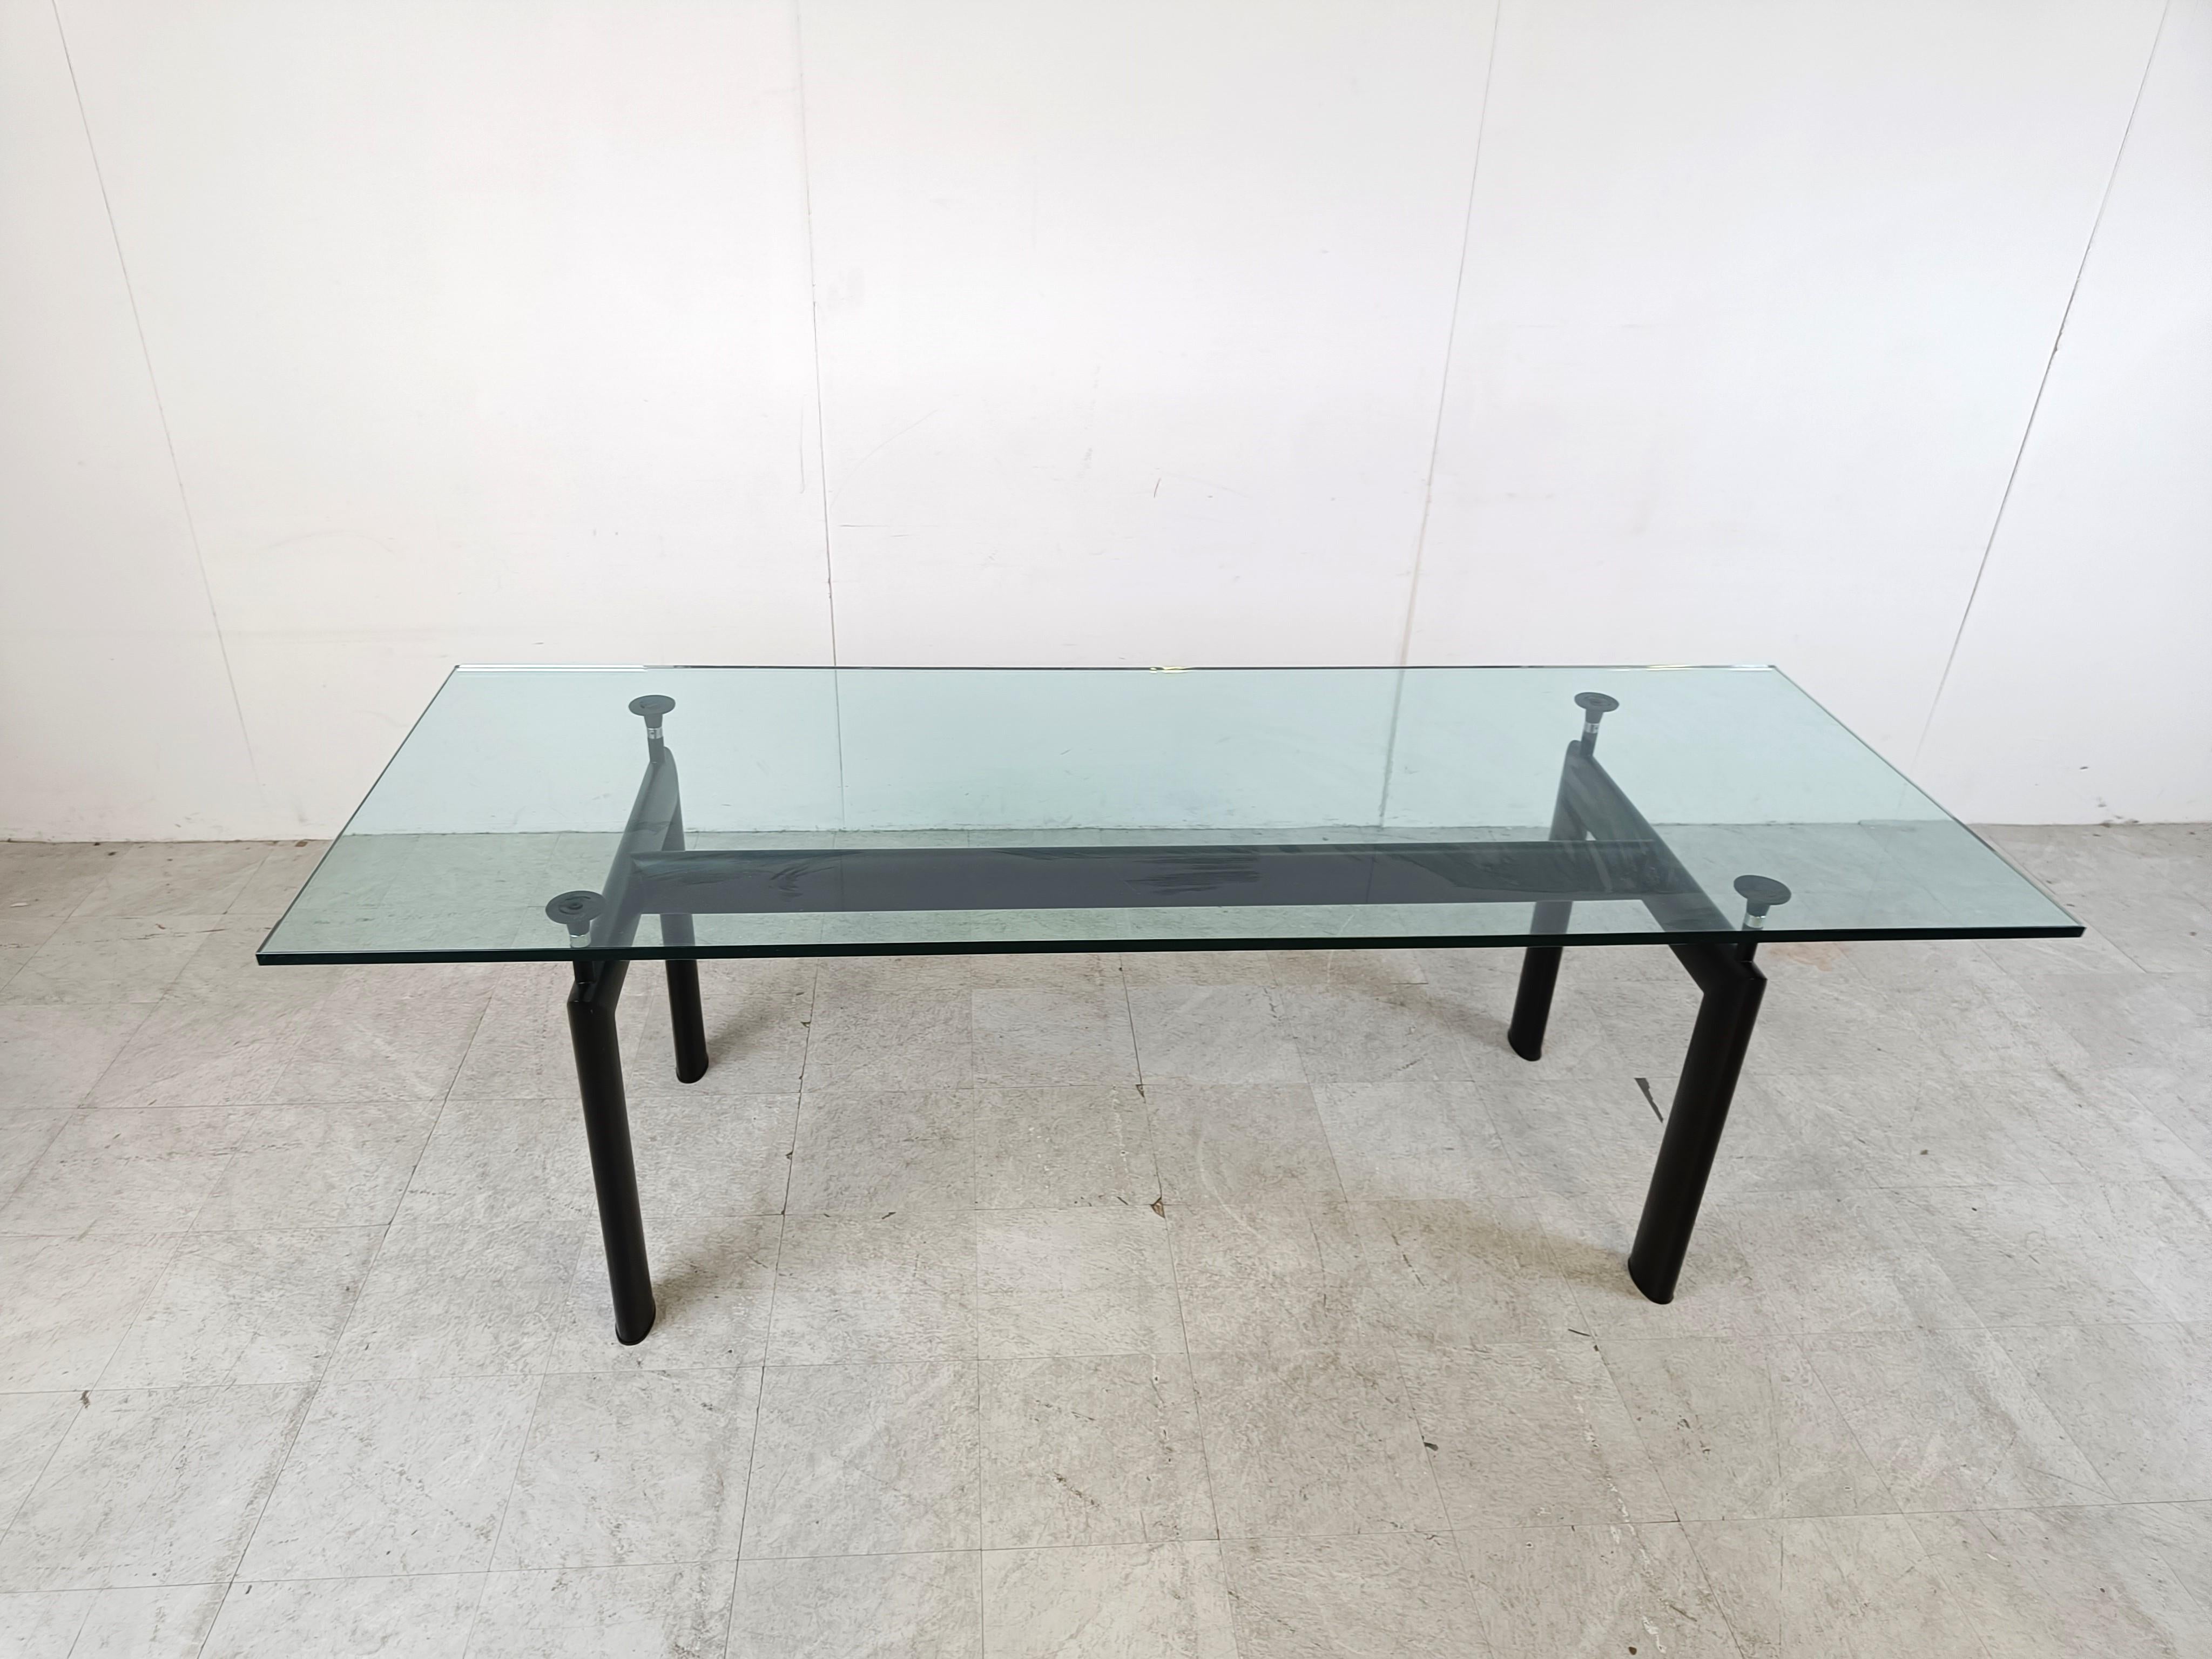 Table de salle à manger conçue par Le Corbusier, Pierre Jeanneret, Charlotte Perriand à l'origine en 1928 pour le Salon d'Automne à Paris et relancée en 1974 par Cassina.

Elle se compose d'une base en aluminium noir avec 4 supports réglables qui